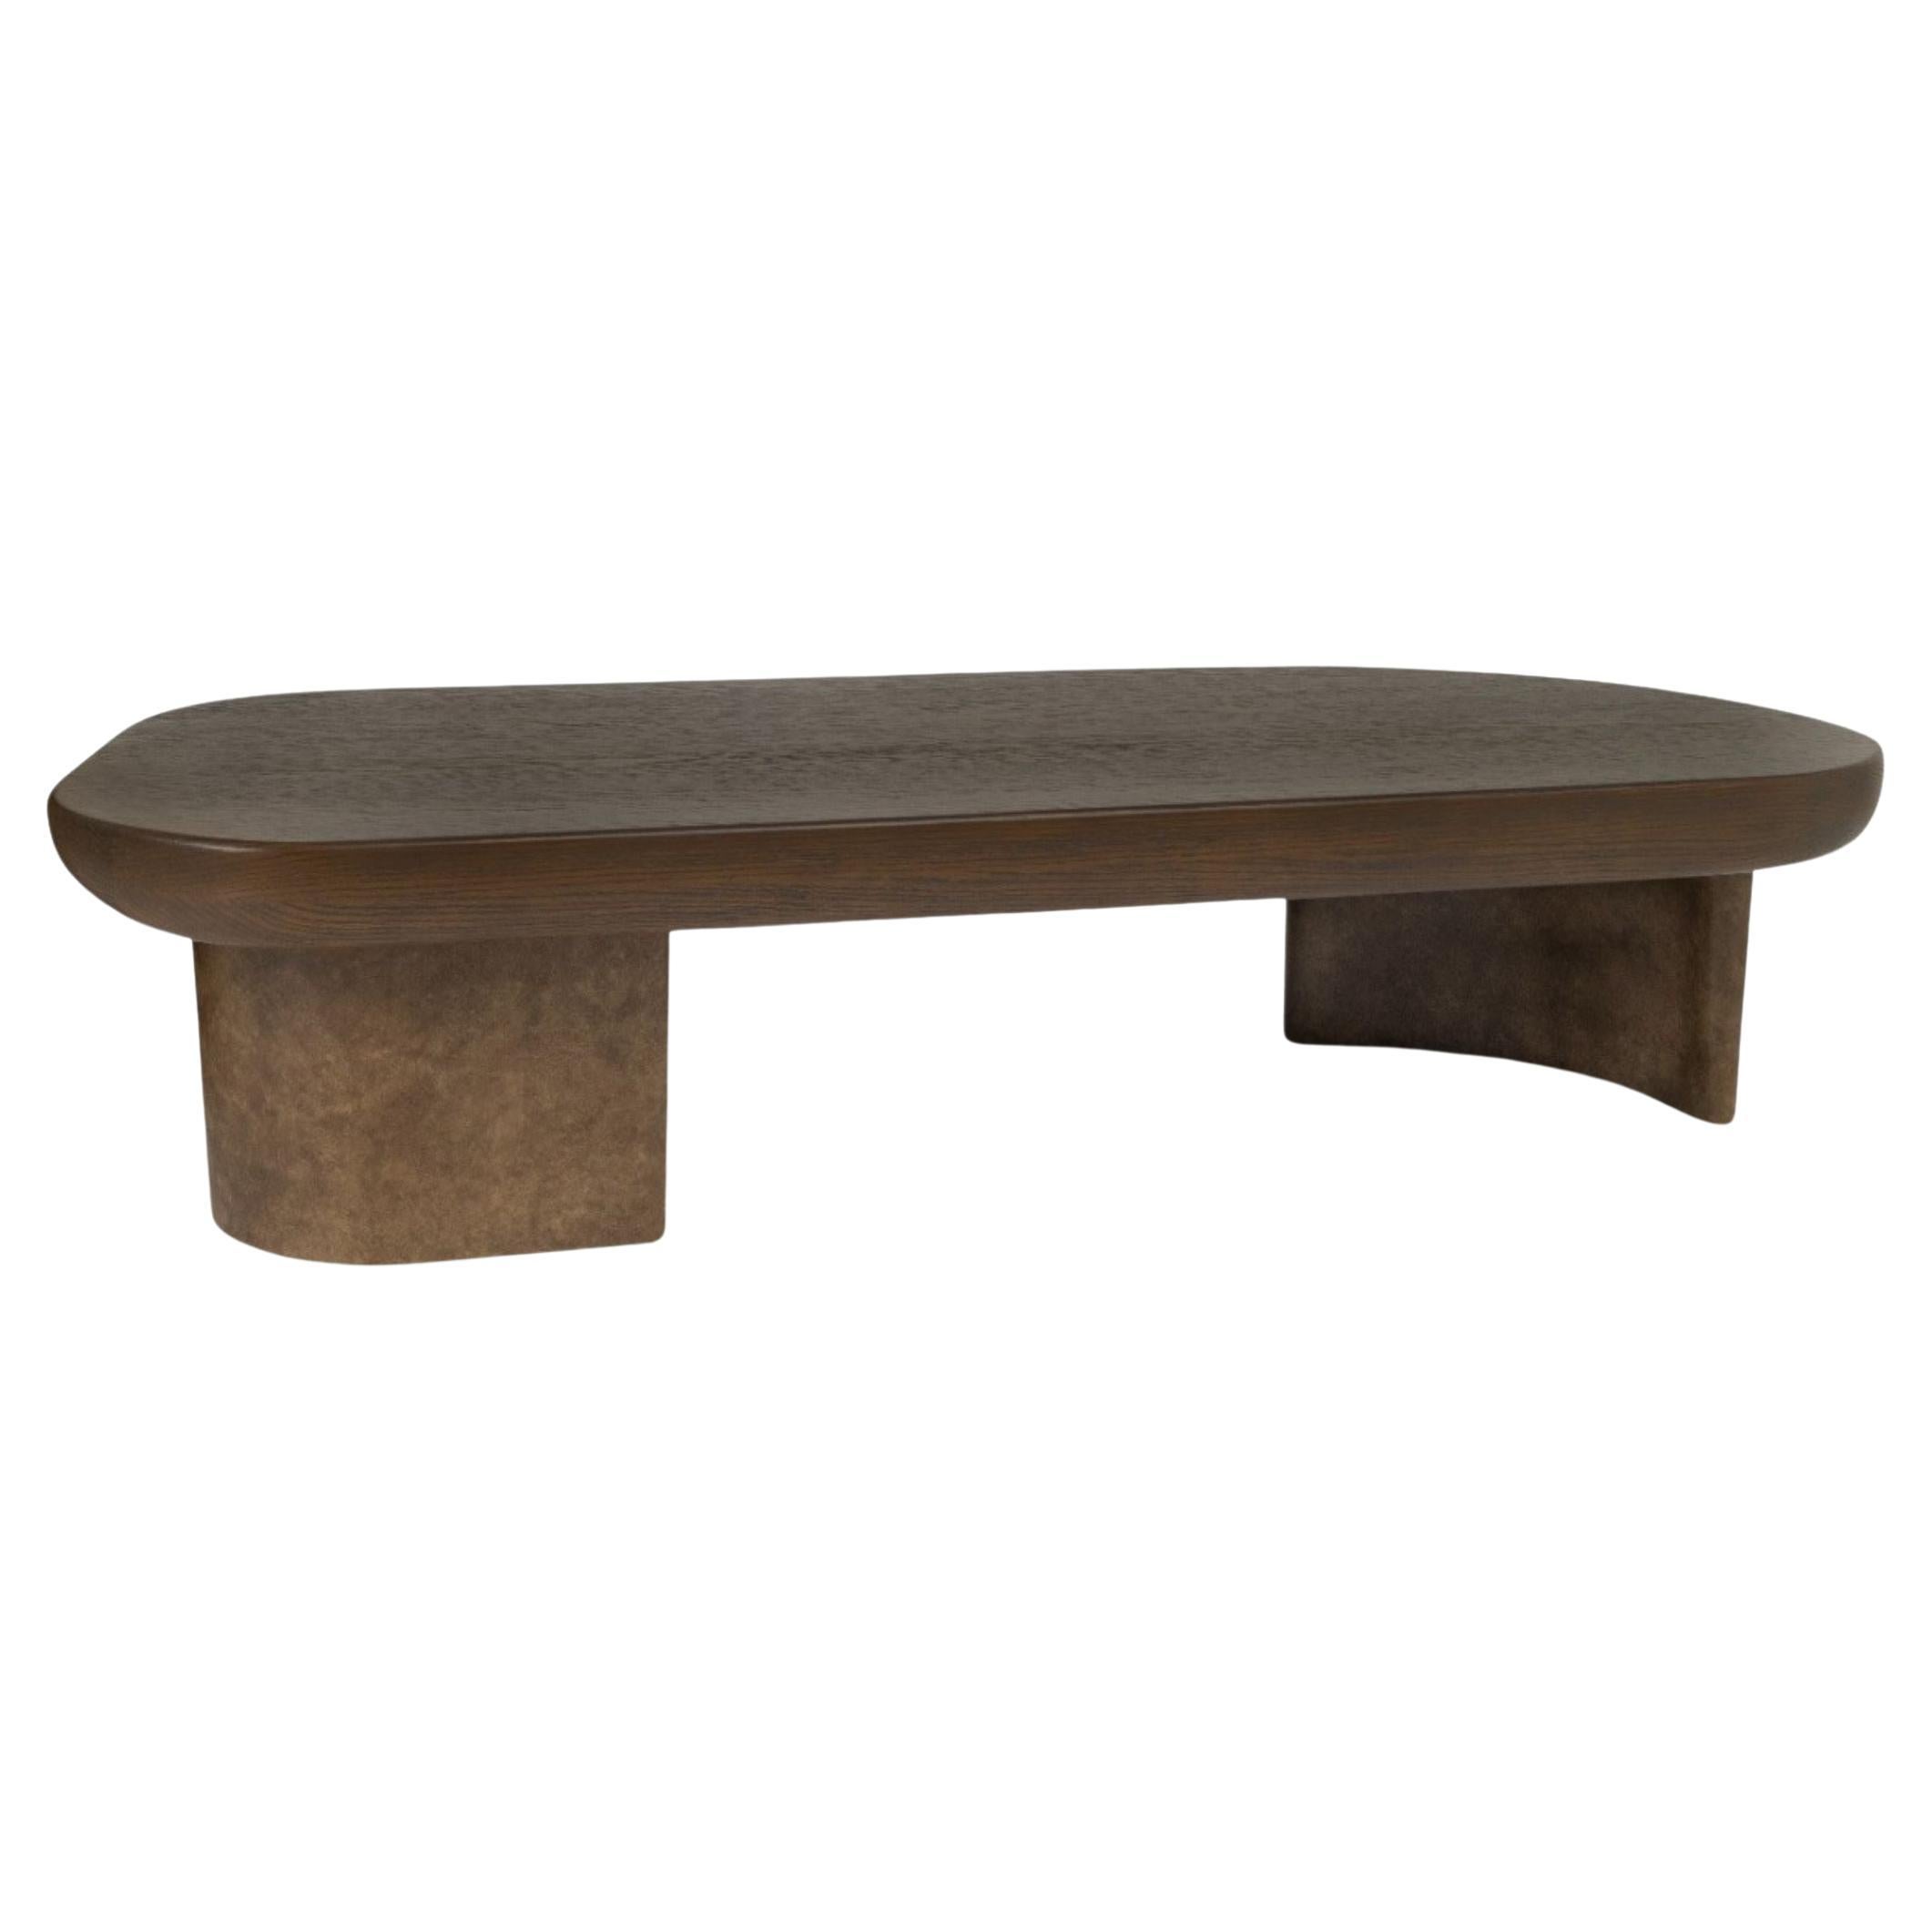  Table basse, plateau en chêne, base en bois laqué texturé faite à la main, océan en vente